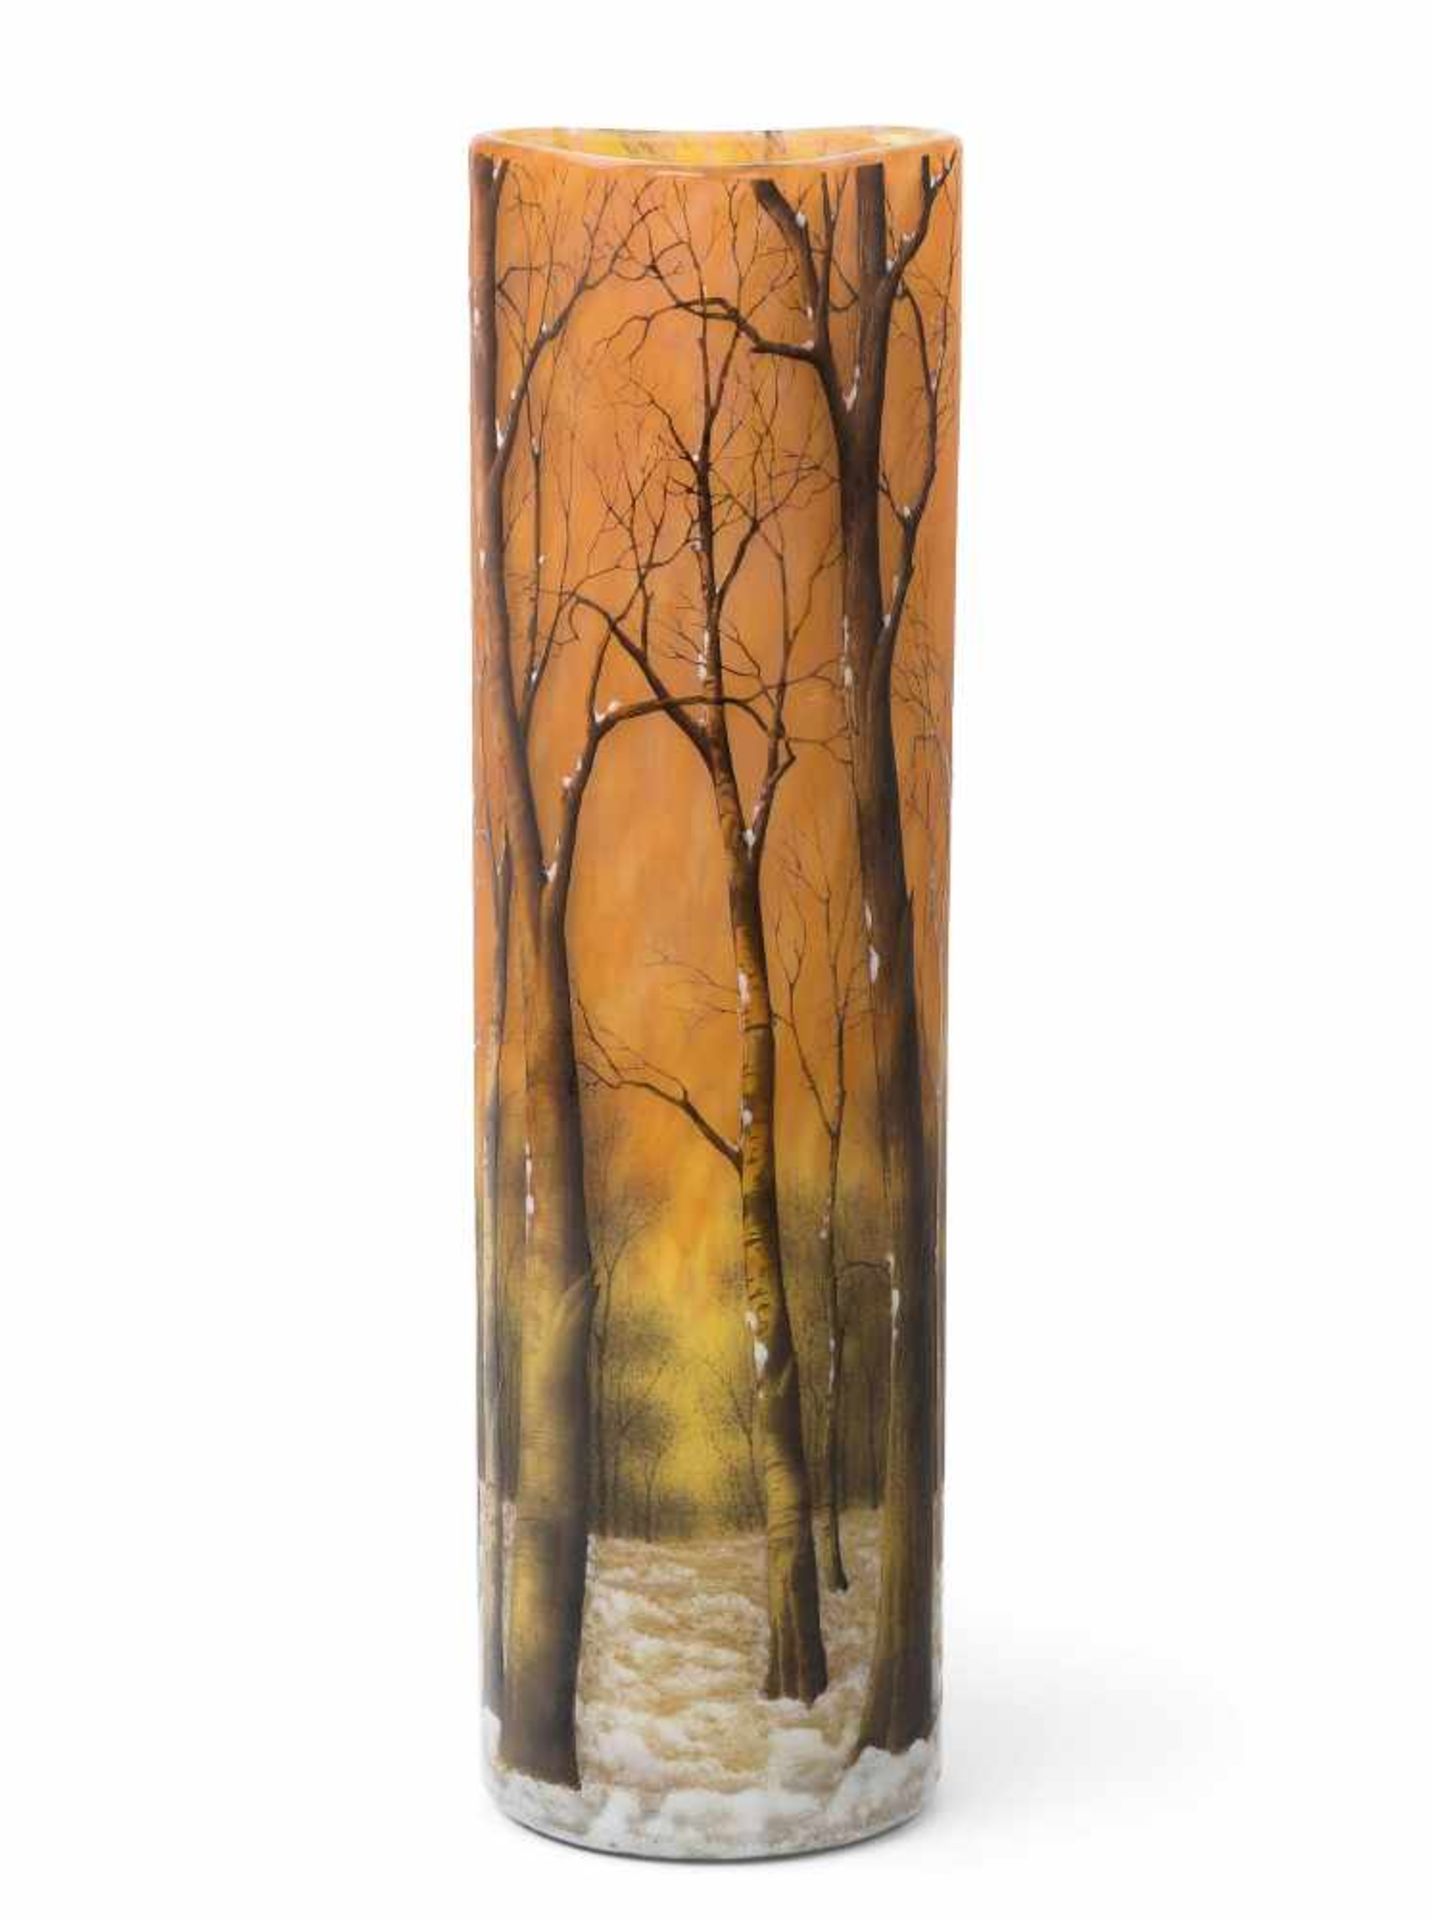 Vase, Daum Um 1900. Farbloses Glas mit gelben und orangen Pulvereinschmelzungen, umlaufend geätzte